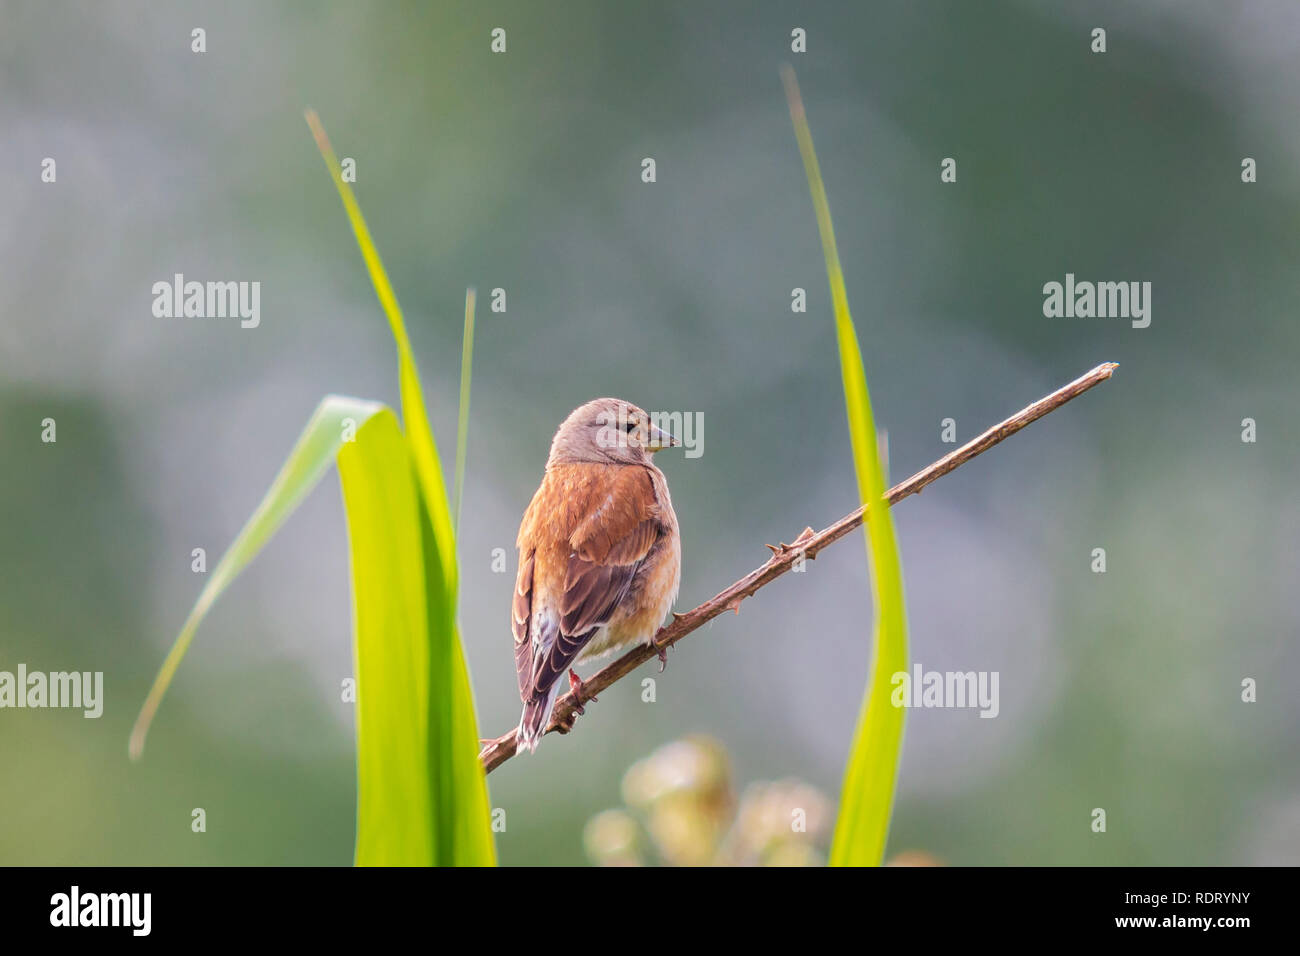 Closeup Portrait einer hänfling Vogel, Carduelis cannabina, Display und die Suche nach einem Gehilfen im Frühling Saison. Das Singen im frühen Sonnenlicht. Stockfoto